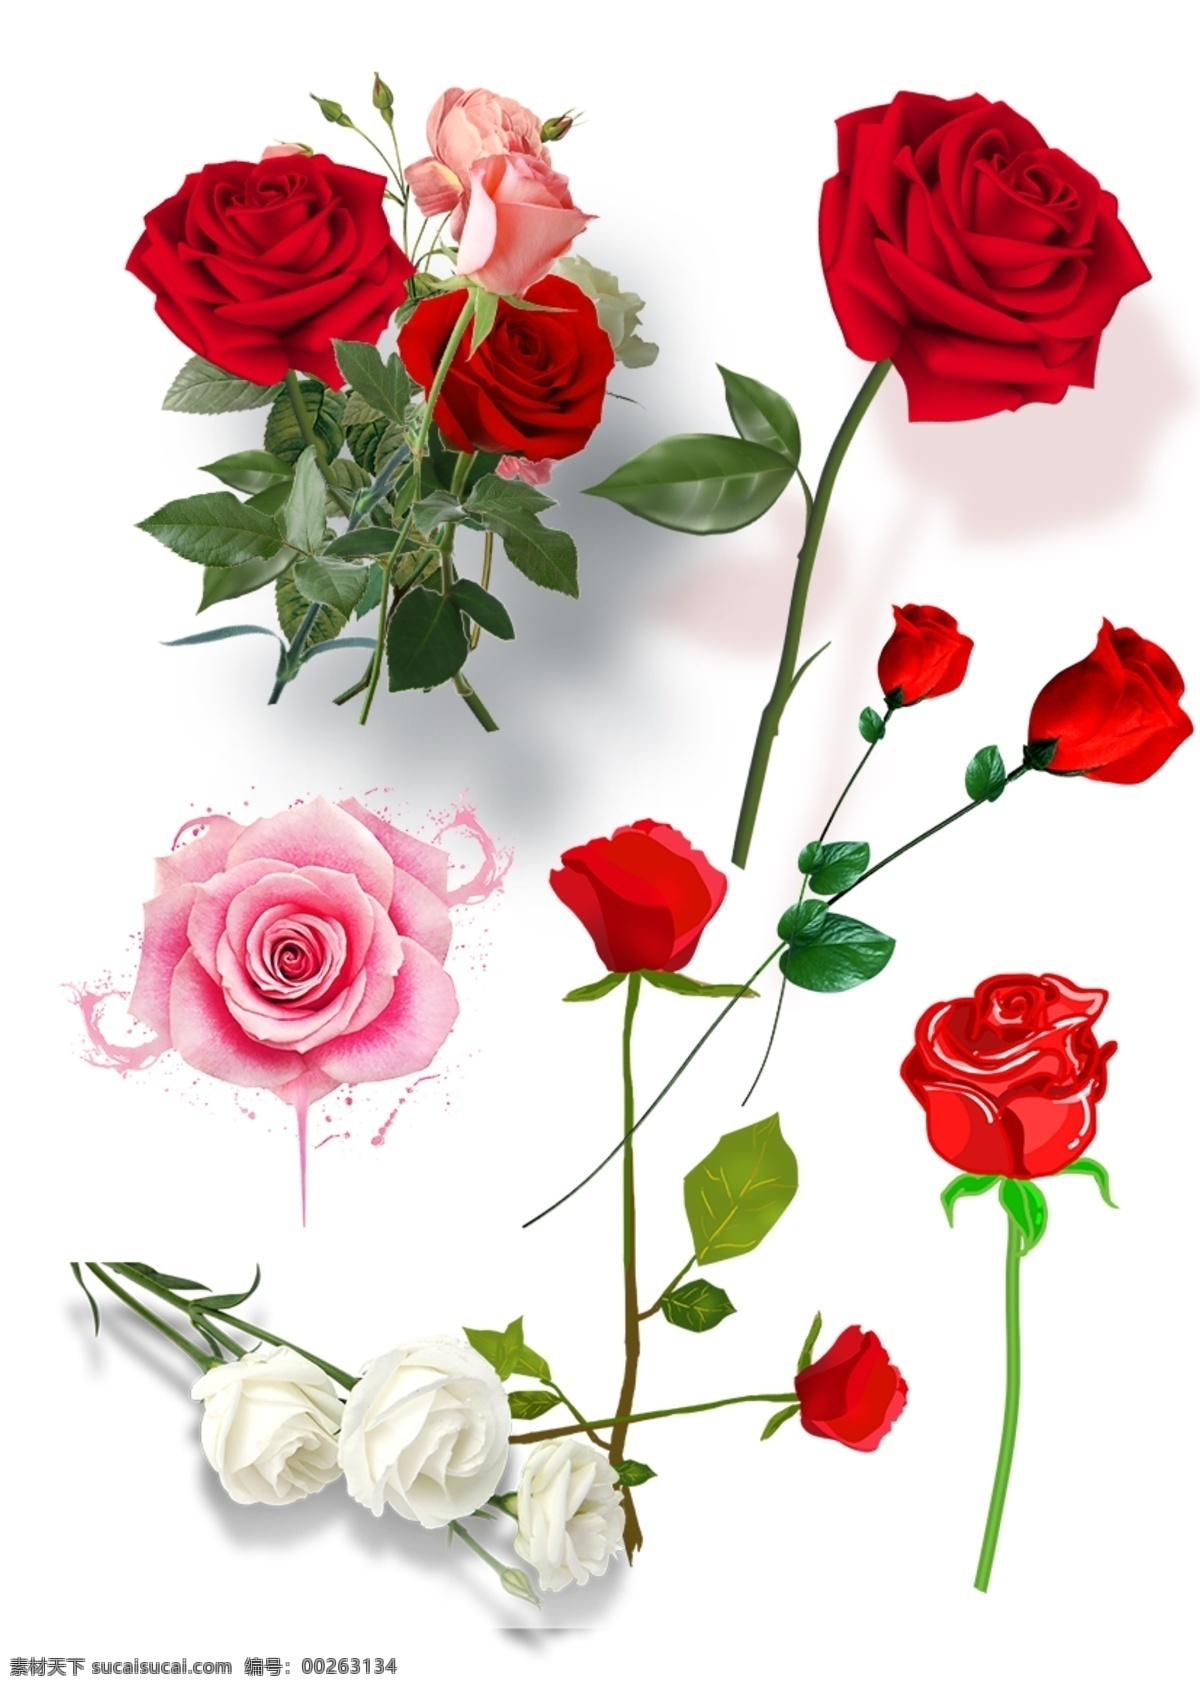 玫瑰 红玫瑰 黄玫瑰 花 植物 美丽 妖艳 装饰 饰品 矢量玫瑰花 玫瑰花插画 玫瑰花图标 玫瑰花素材